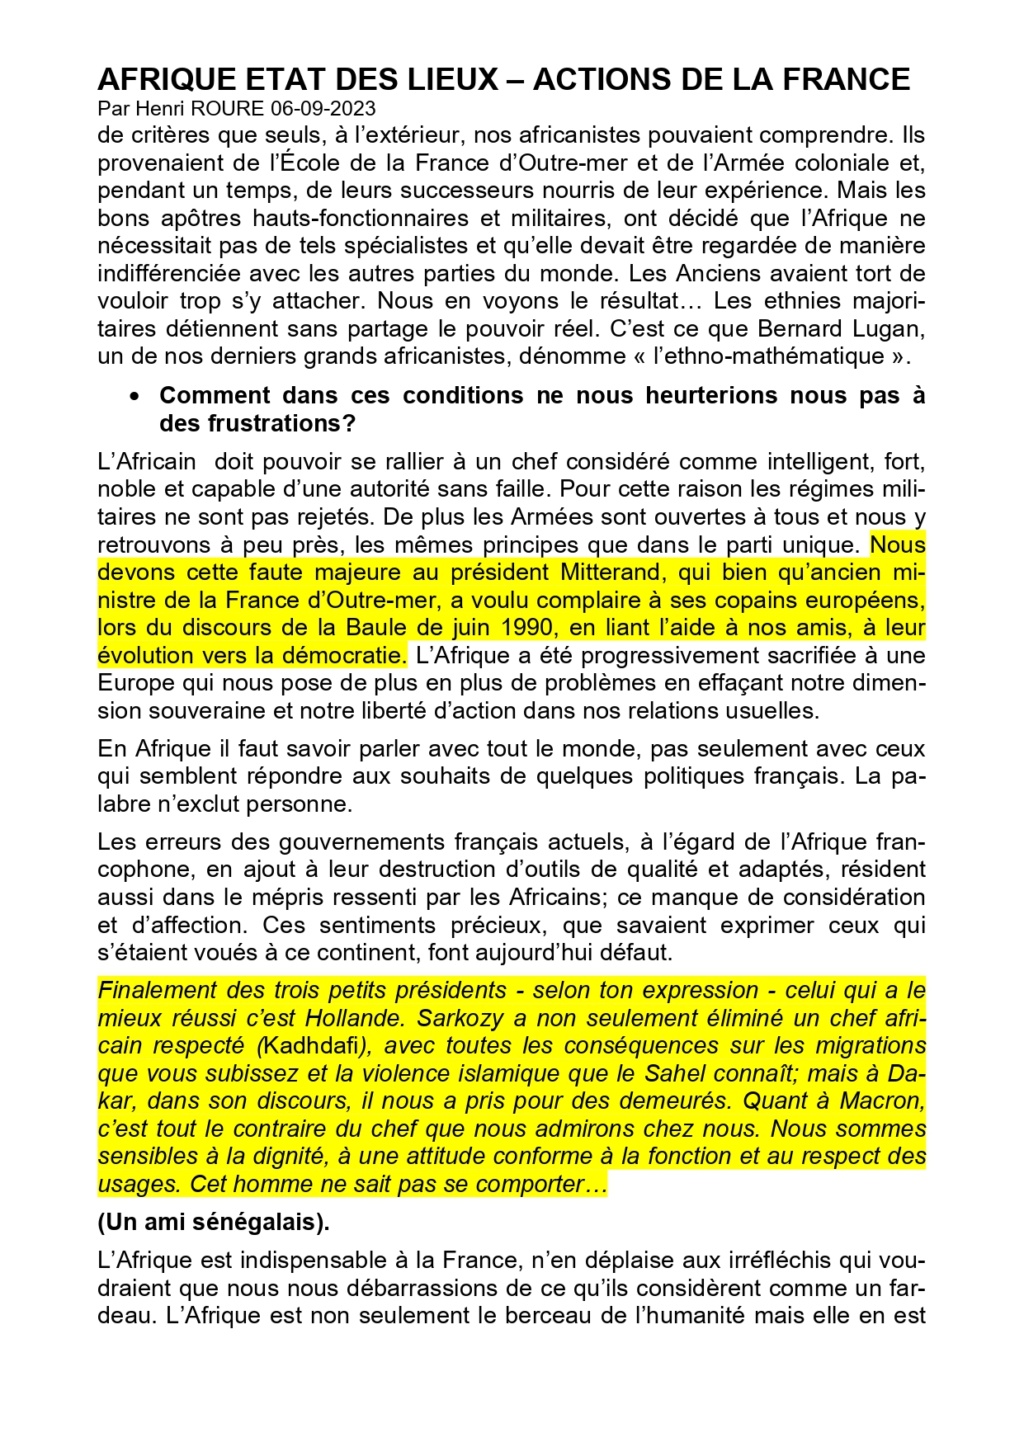 AFRIGUE ETAT DES LIEUX - ACTION DE LA FRANCE par Henri ROURE 06-09-2023 "Quand les Français serviront-ils à nouveau la France? Afriqu11